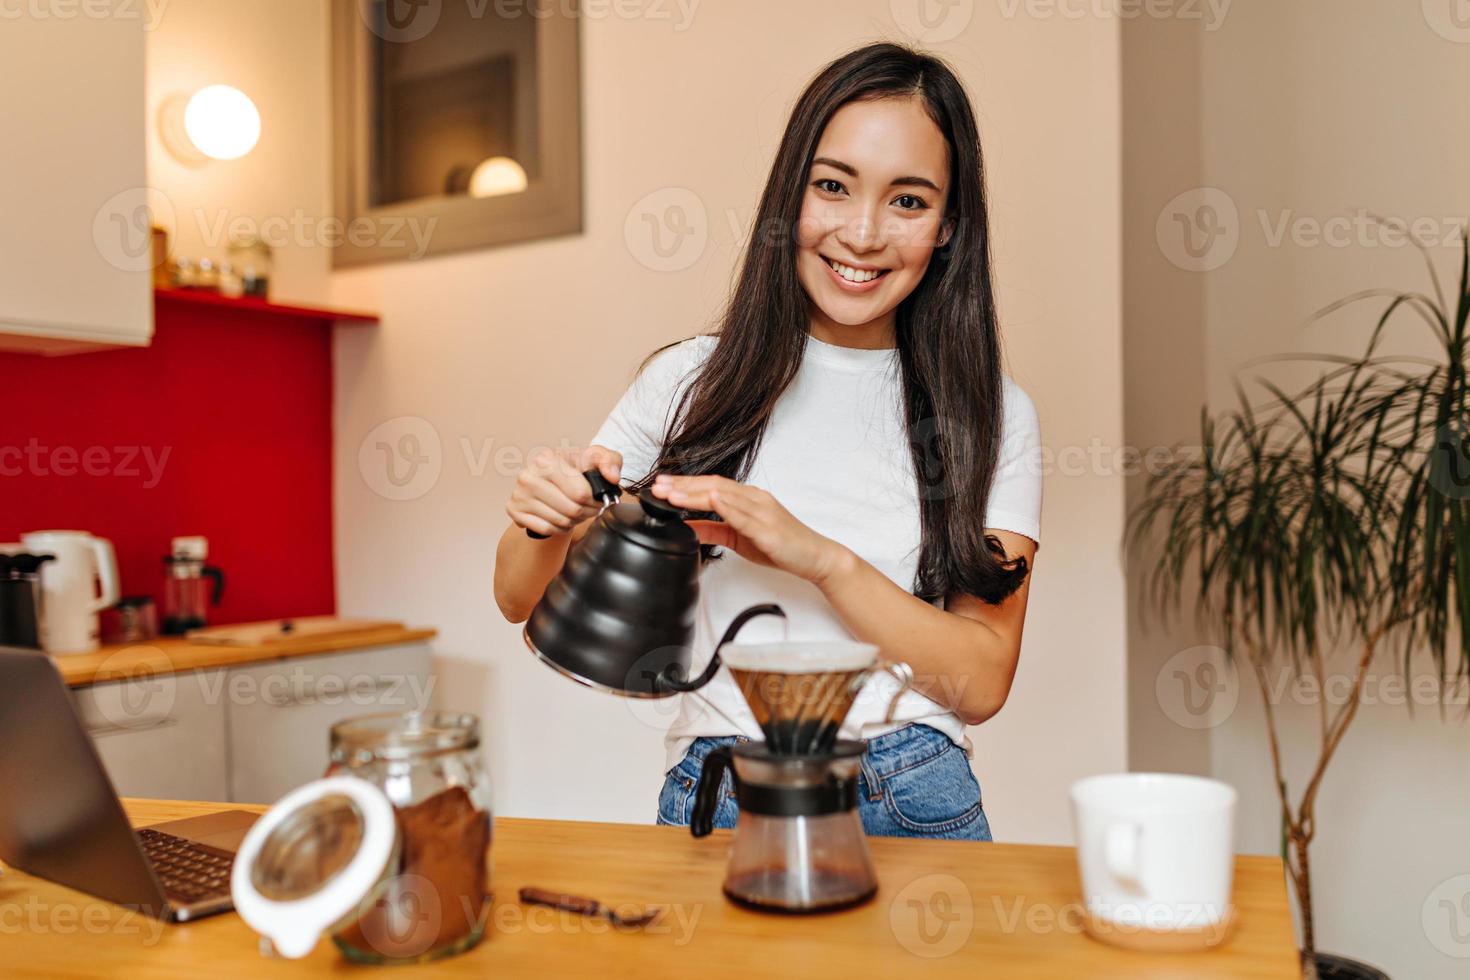 chica de ojos marrones con camiseta blanca mira a la cámara con una sonrisa y vierte agua hirviendo en una cafetera foto